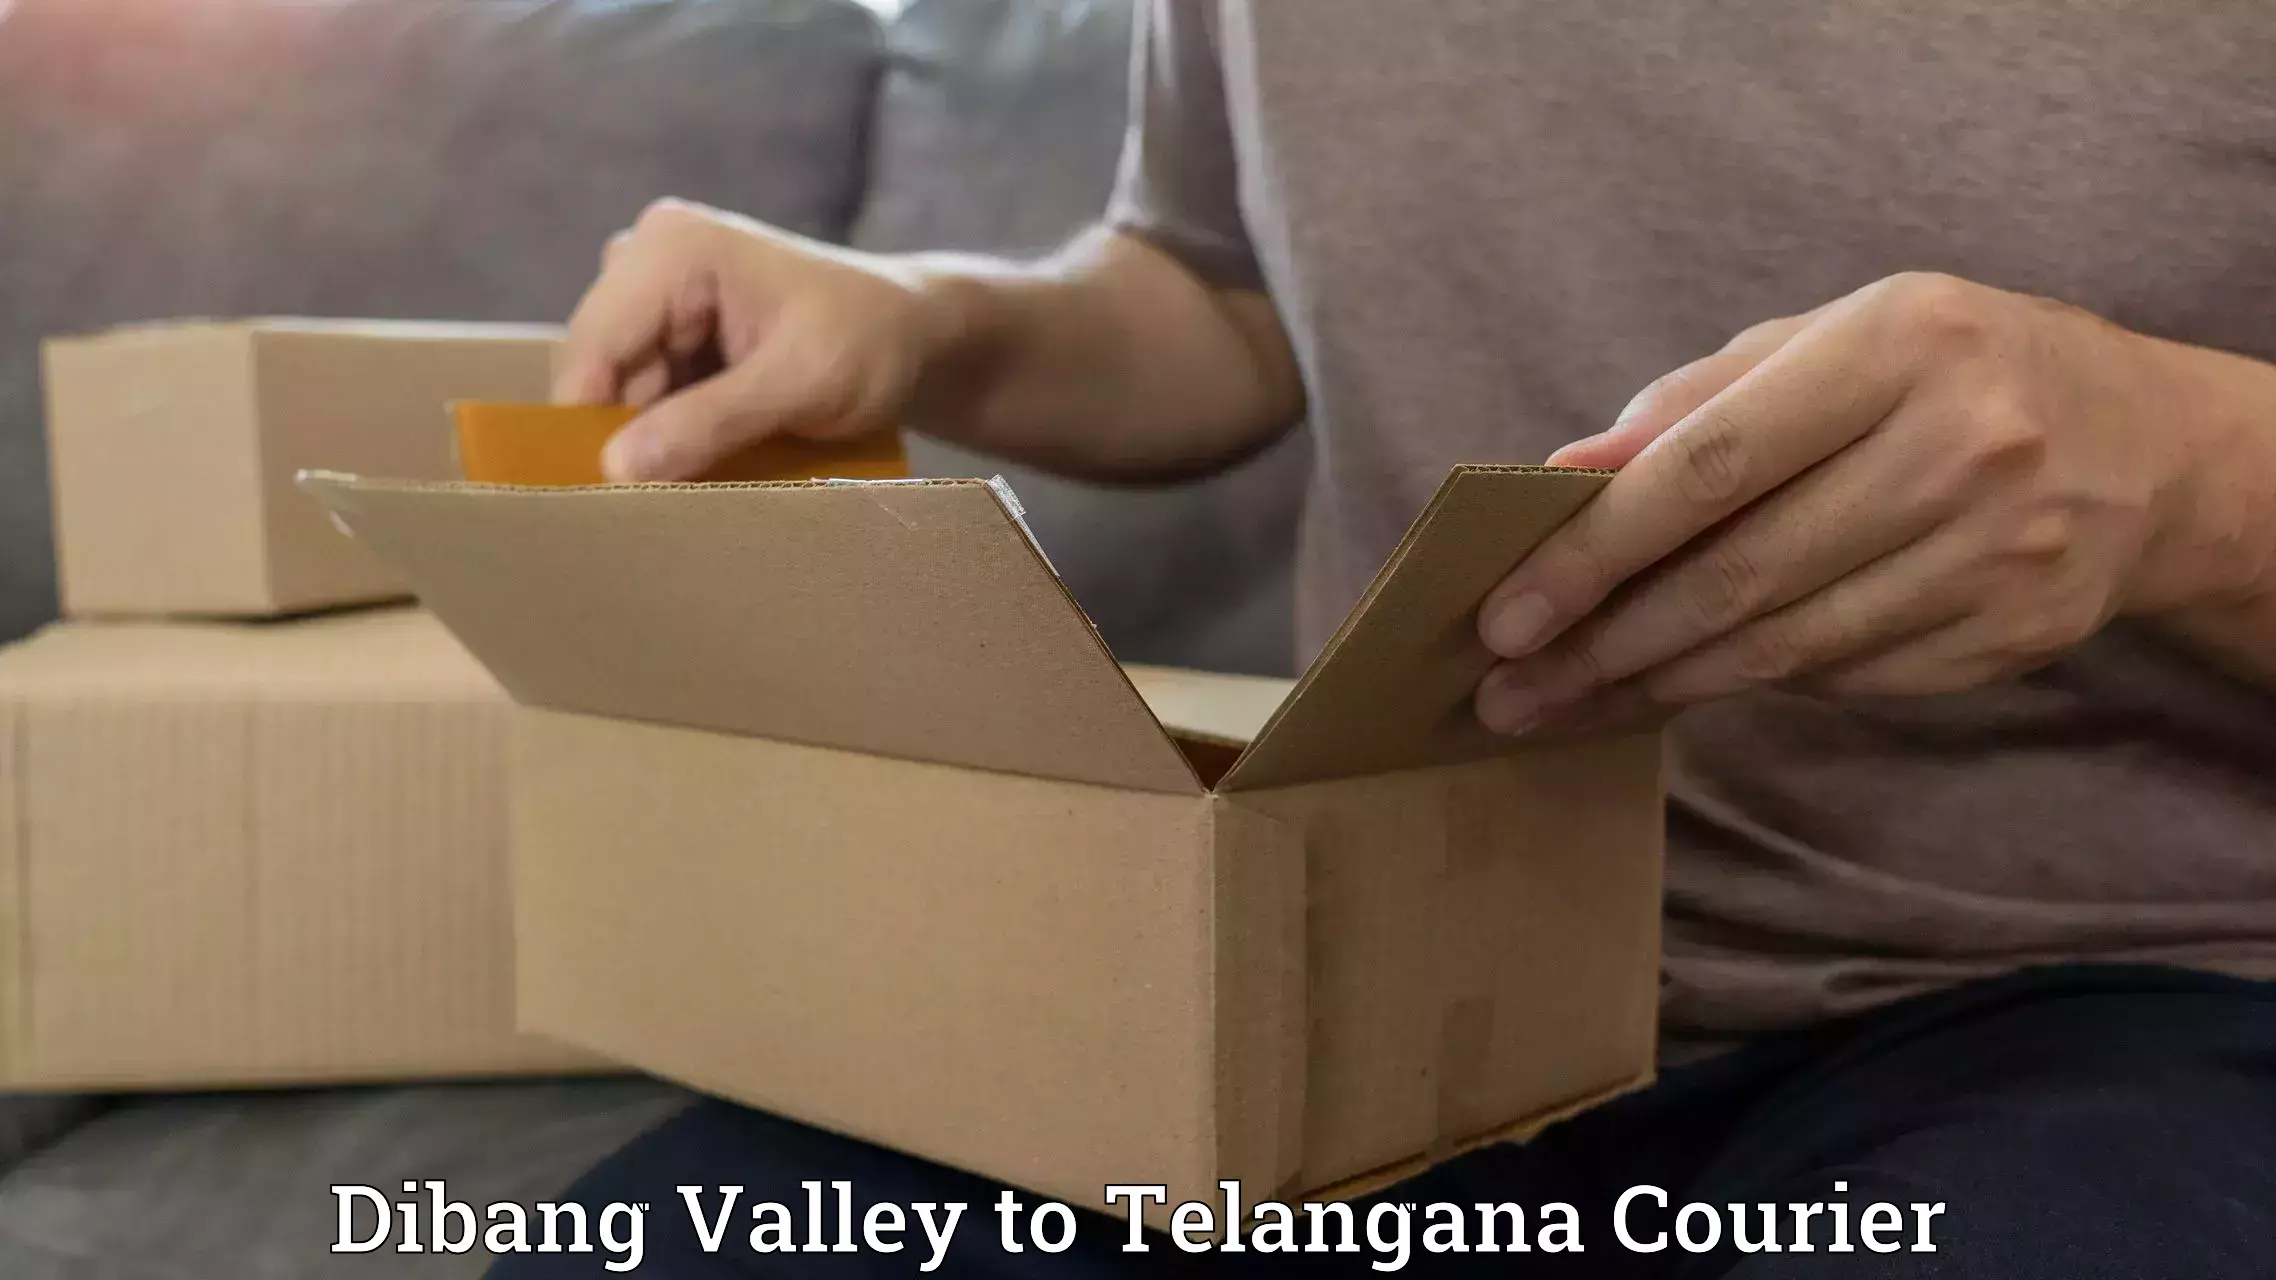 24/7 courier service Dibang Valley to Balanagar